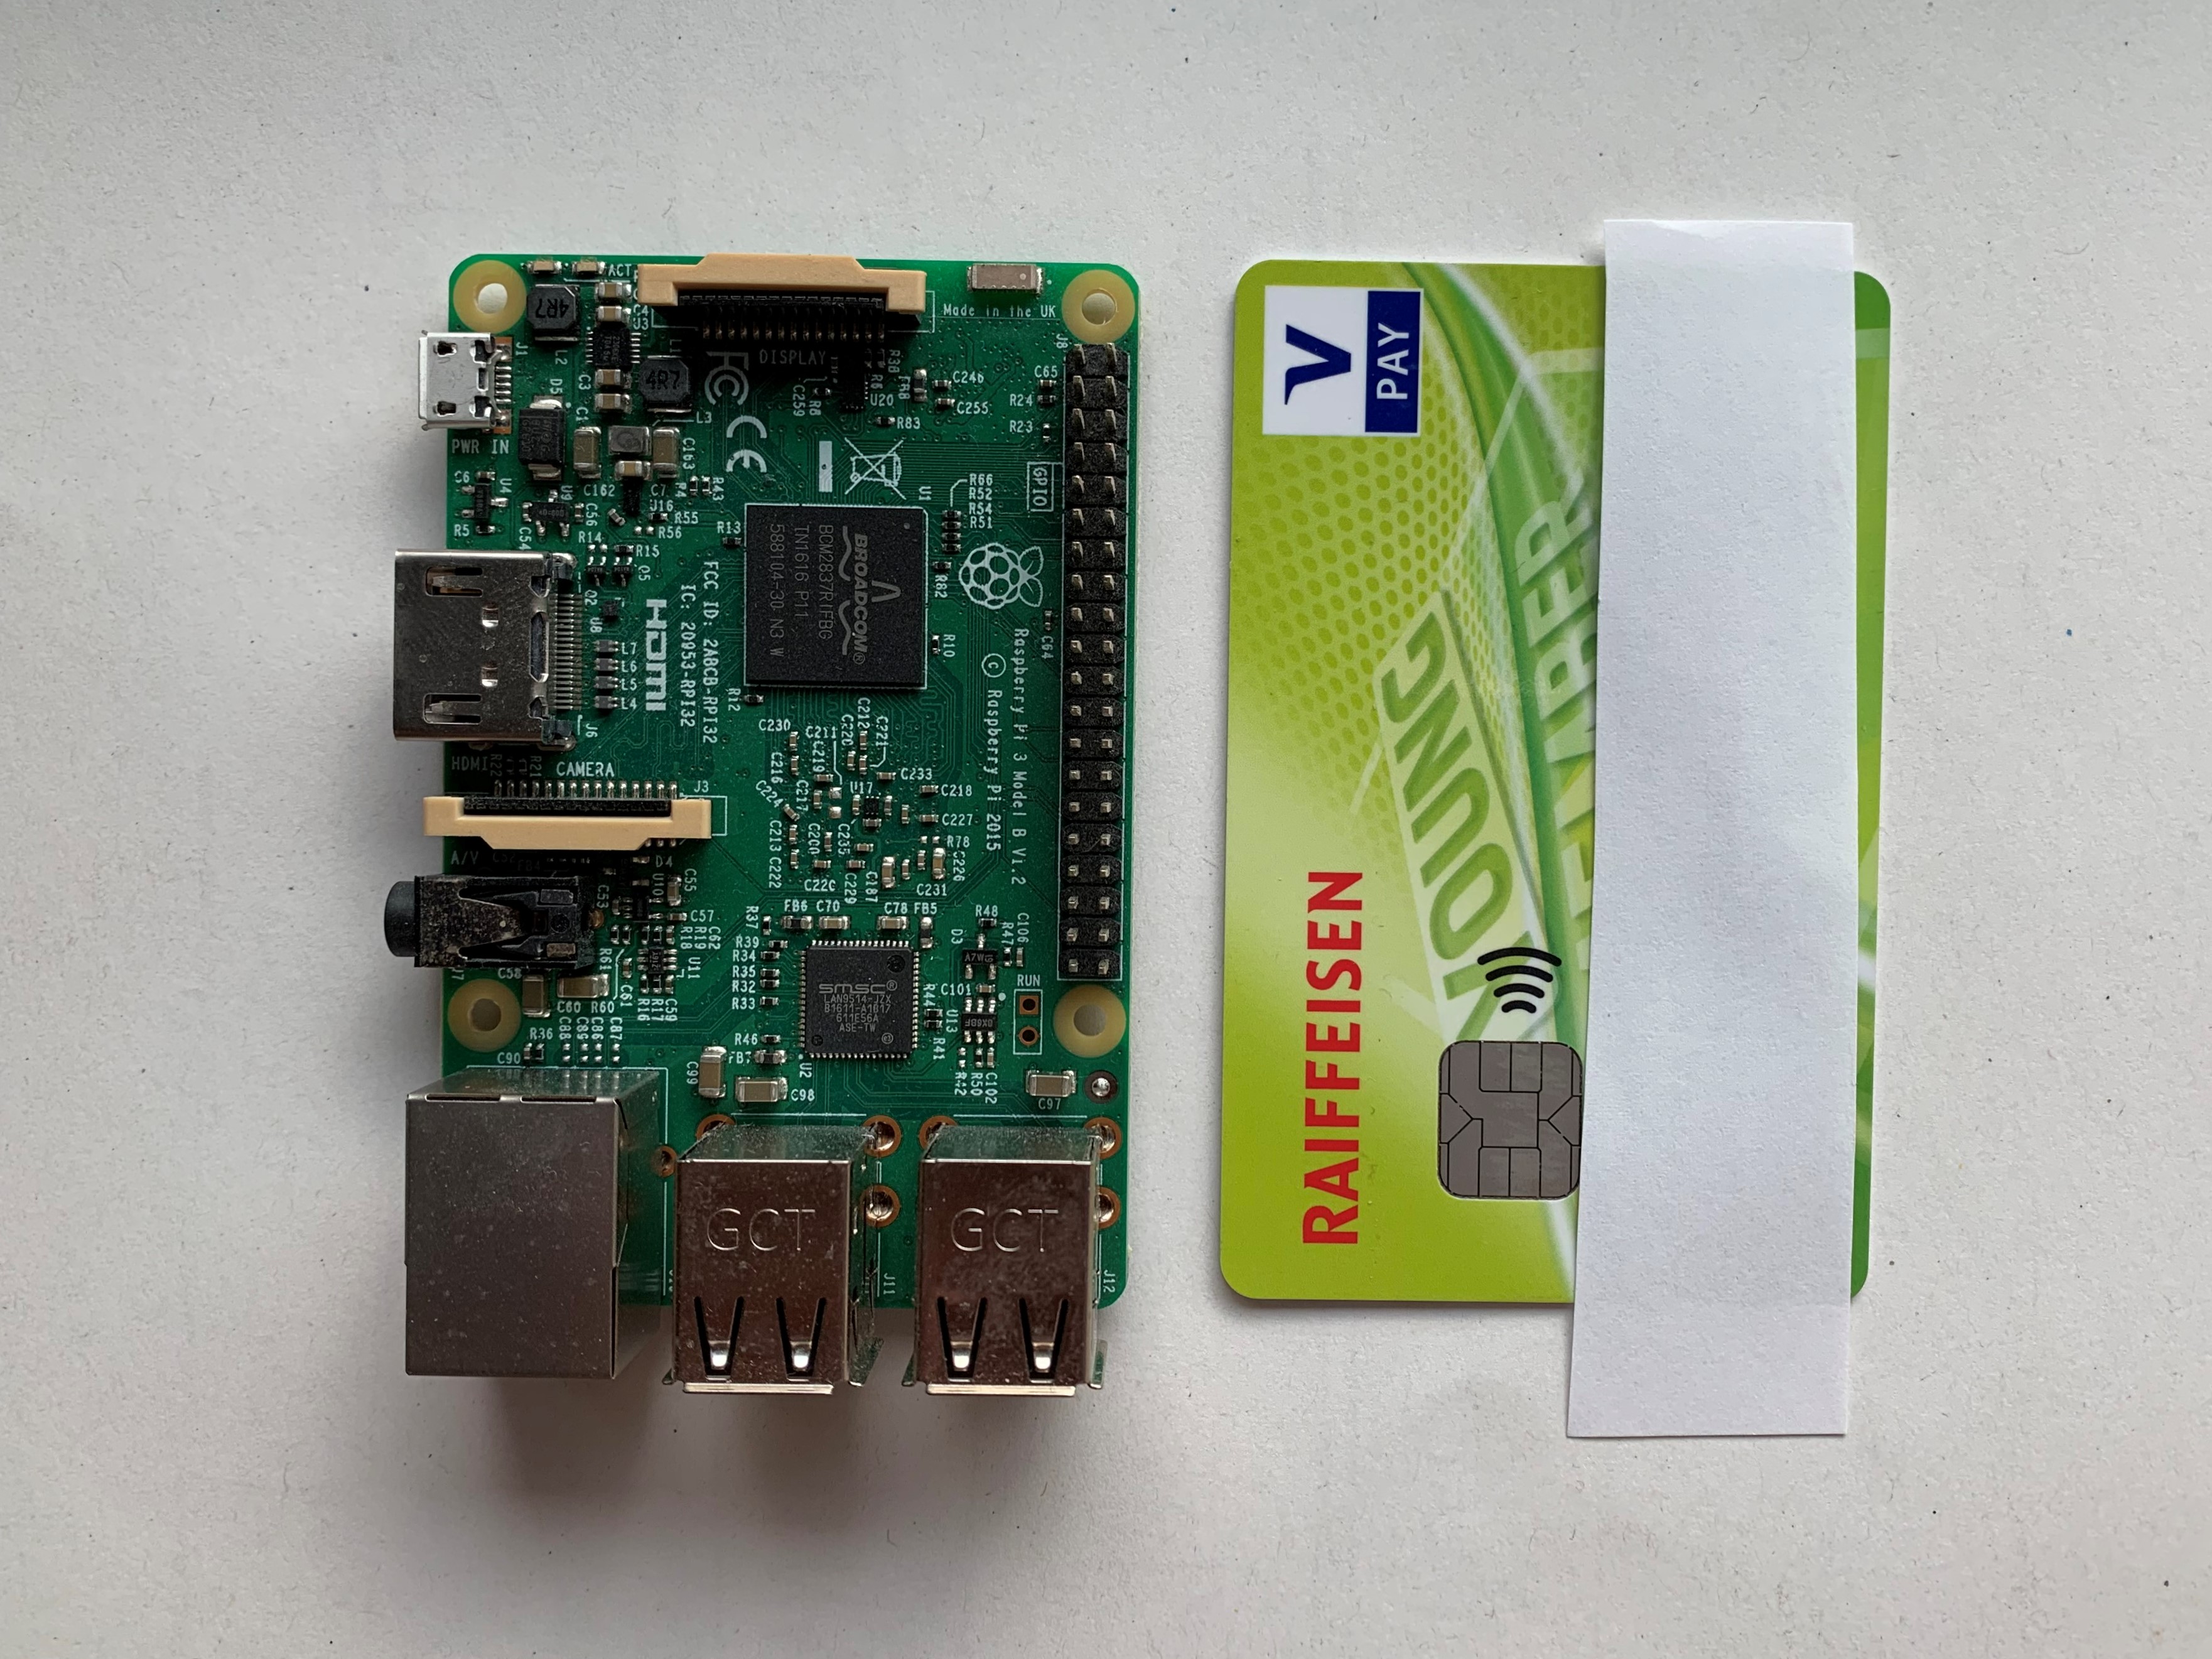 Ein Raspberry Pi im Vergleich zu einer Kreditkarte